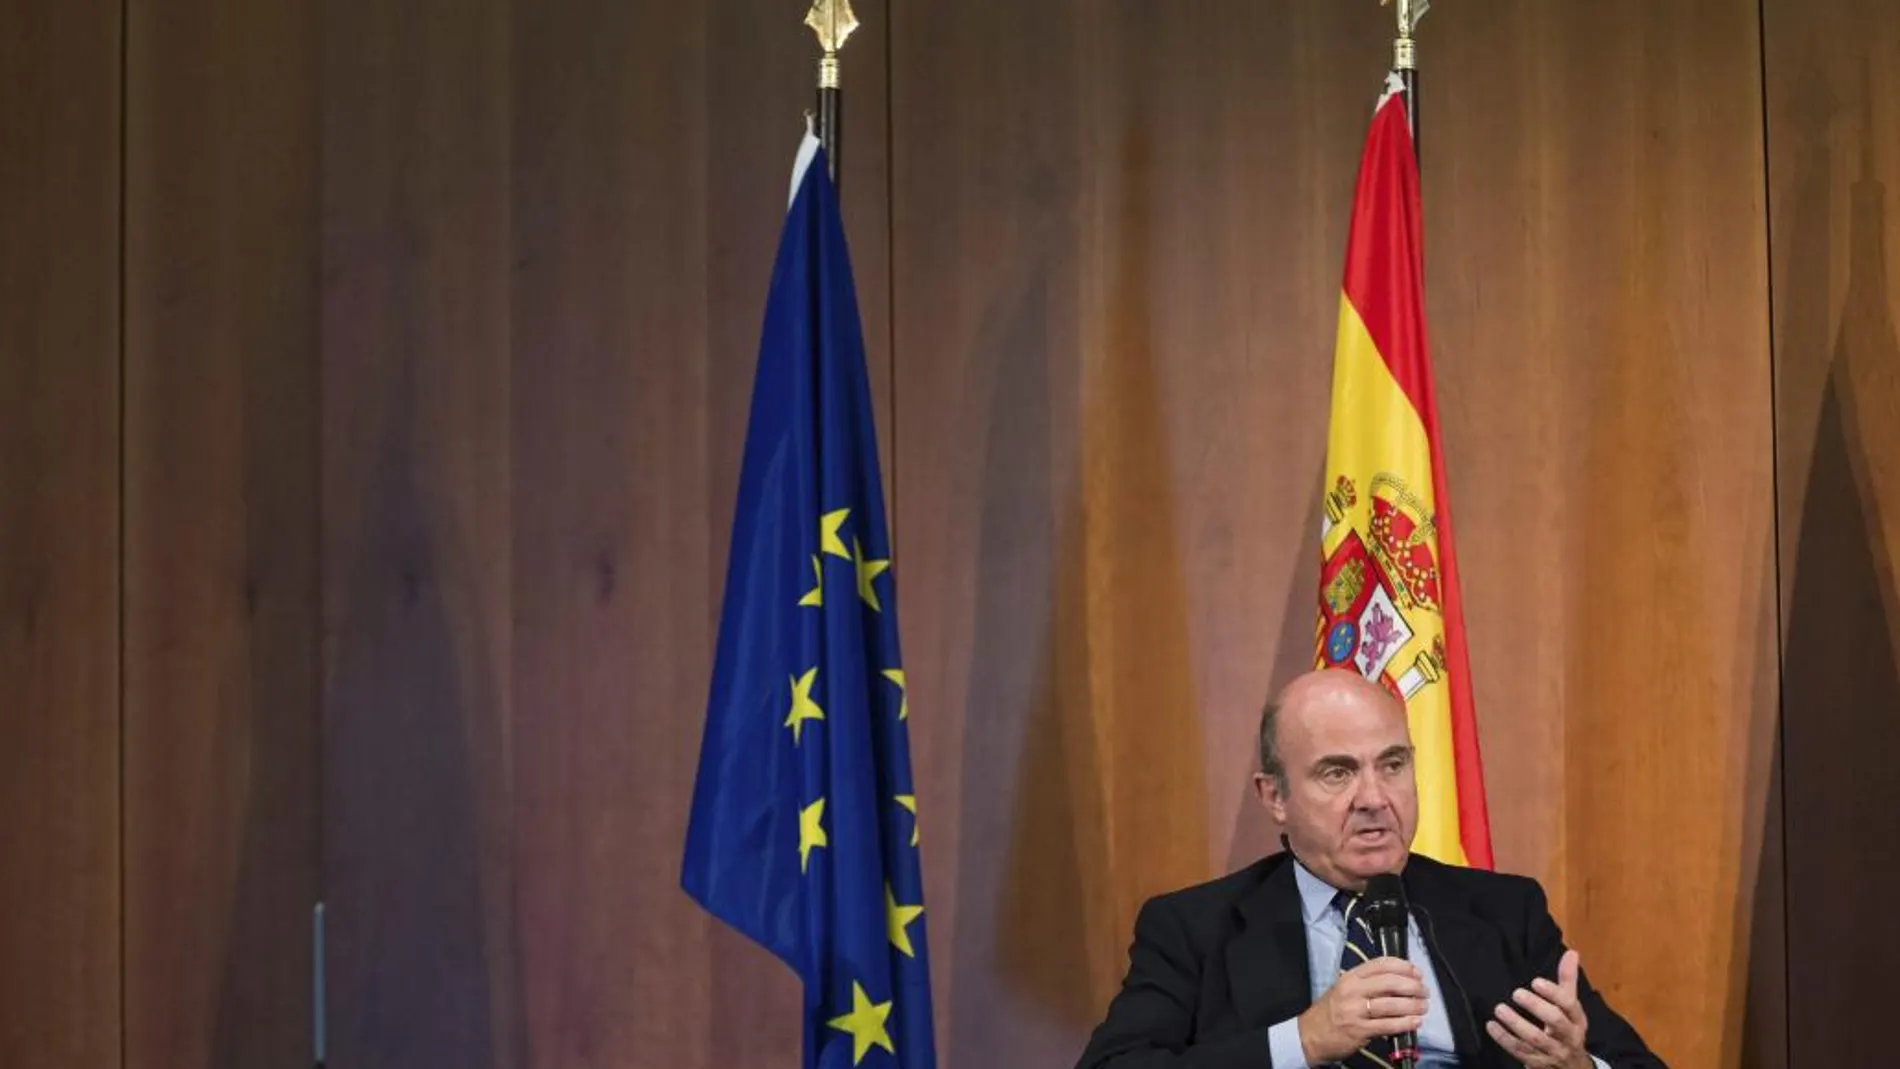 El ministro español de Economía, Luis de Guindos, interviene en una reunión de empresarios en Berlín ayer, 1 de septiembre de 2015.